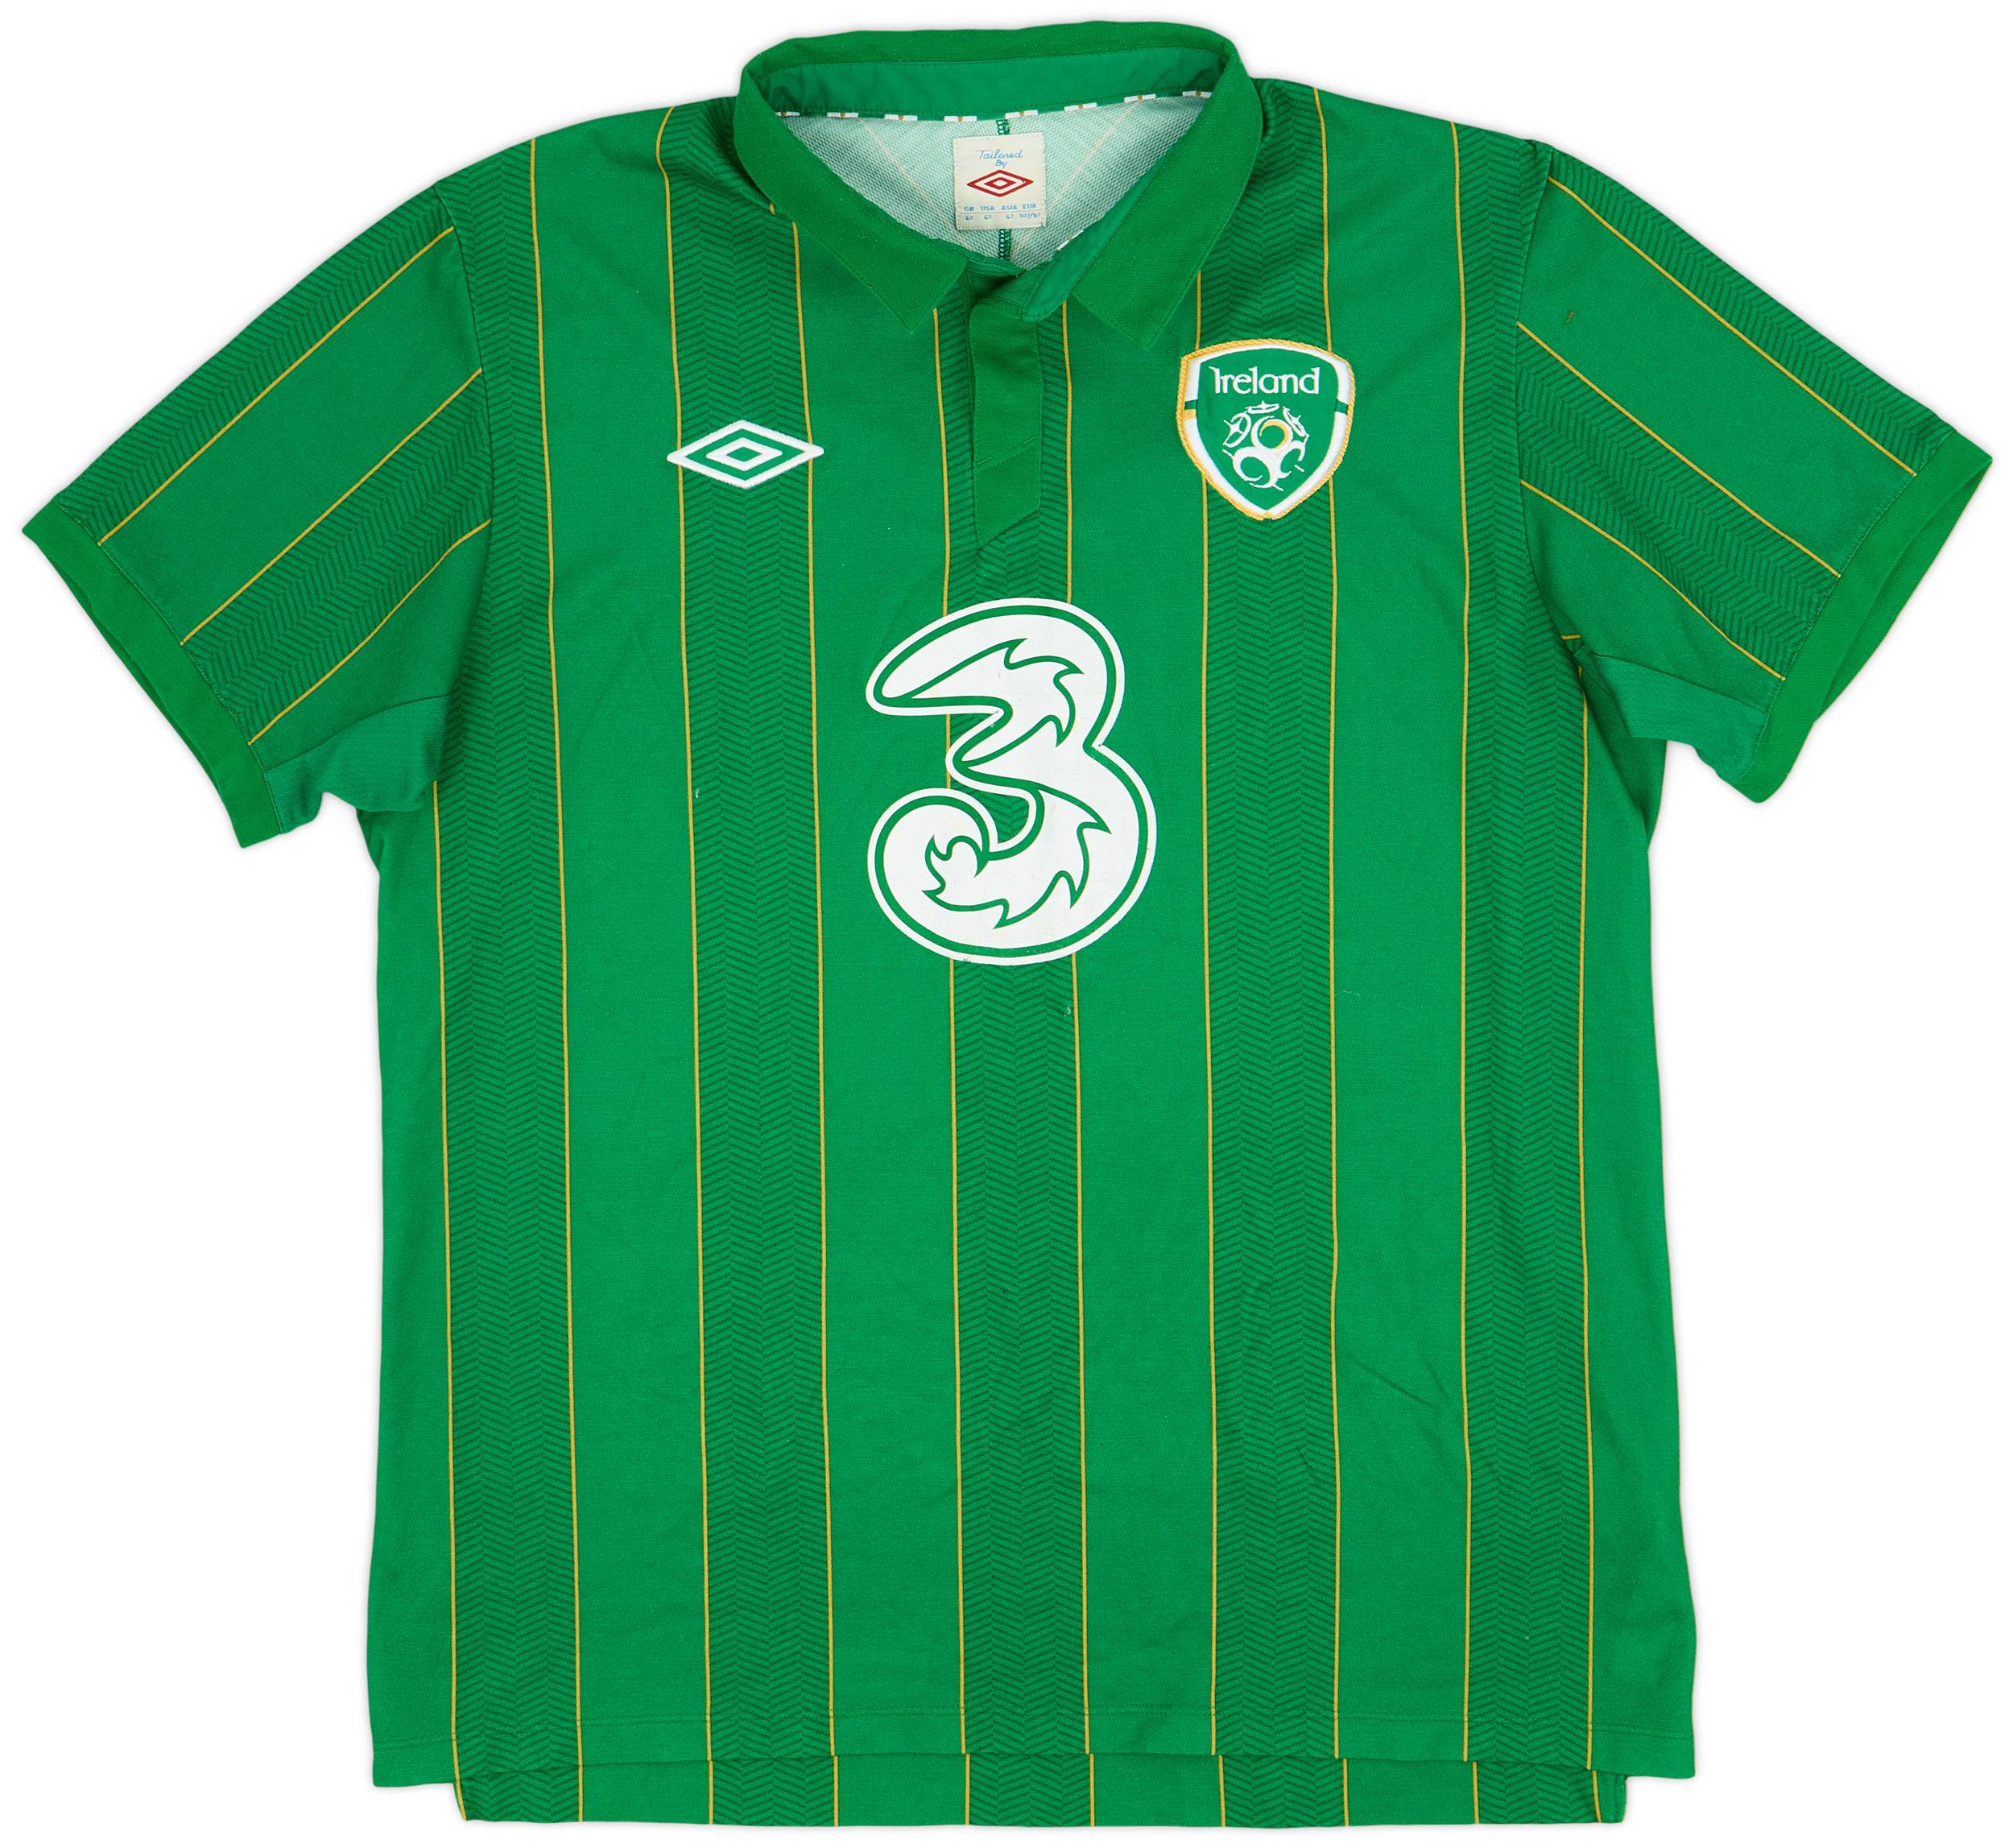 2011-12 Ireland Home Shirt - 6/10 - (L)